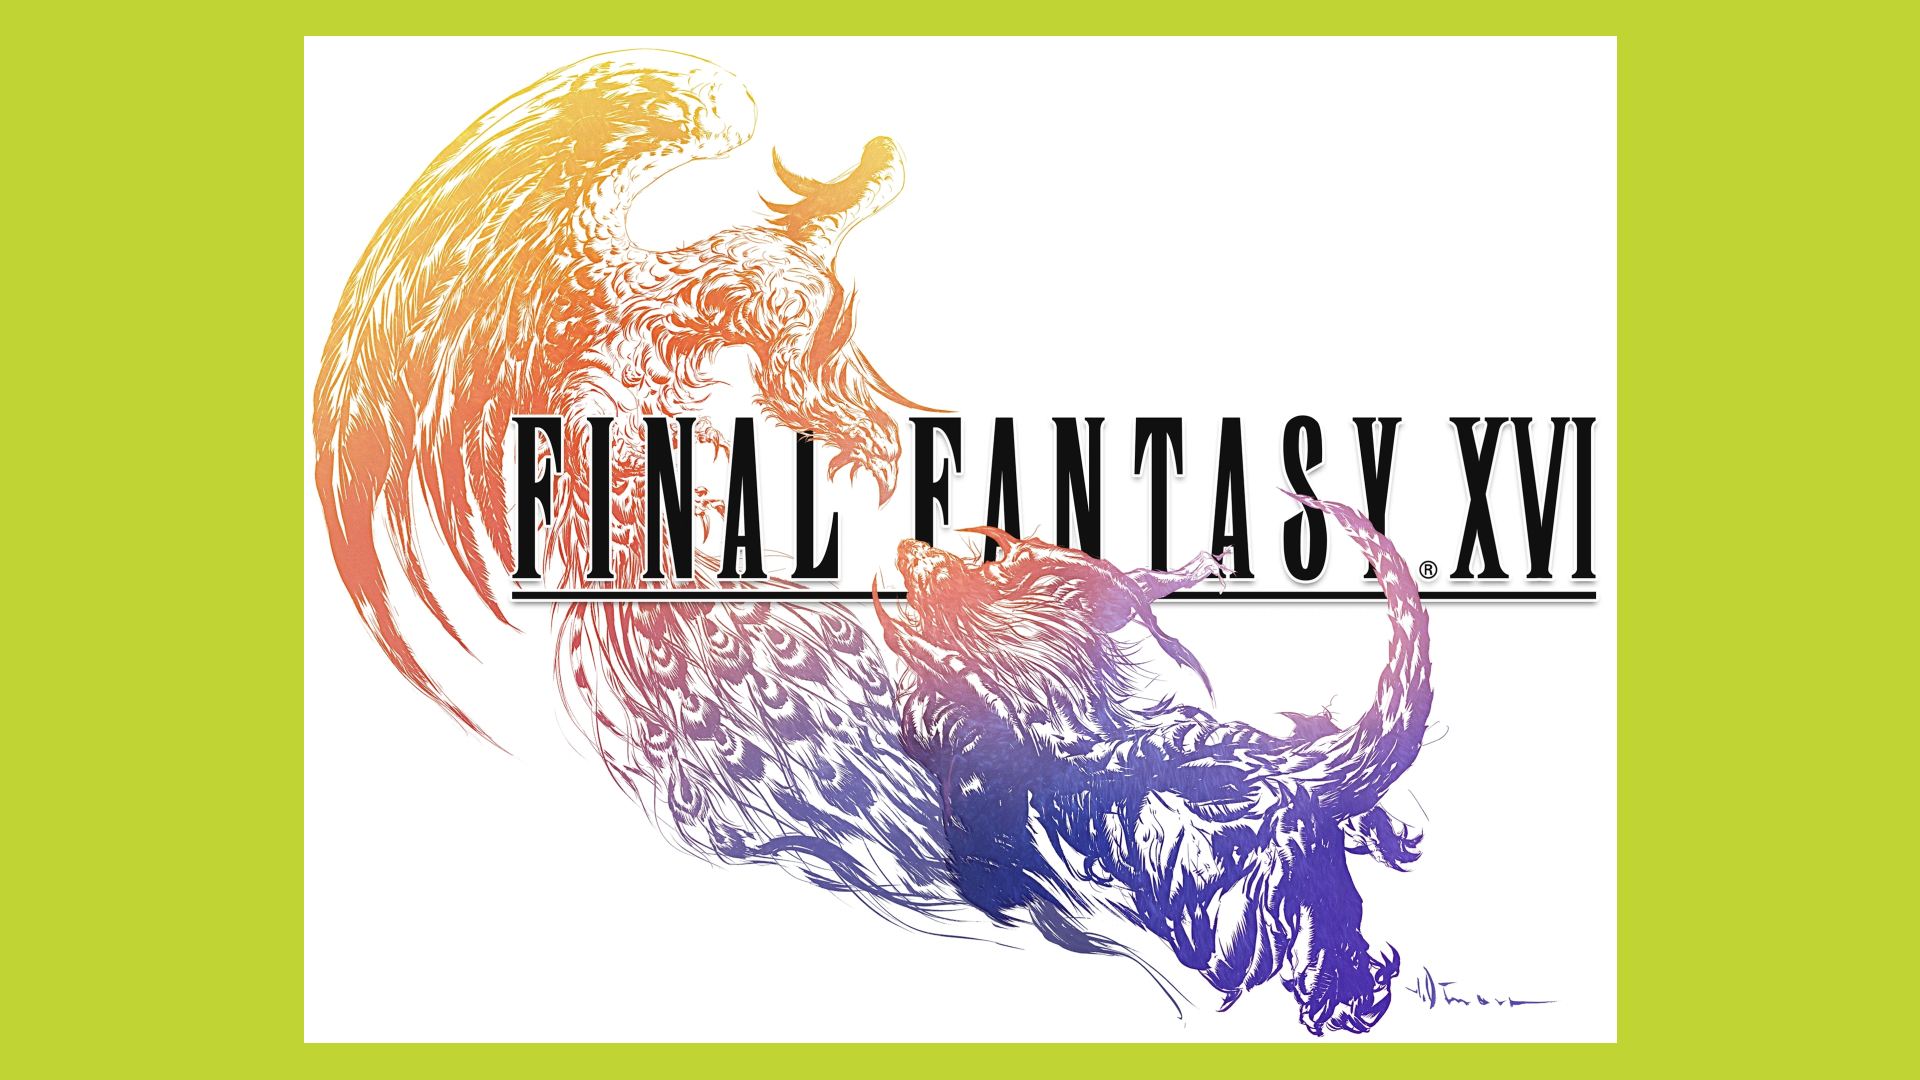 Final Fantasy 16 logo: The logo can be seen